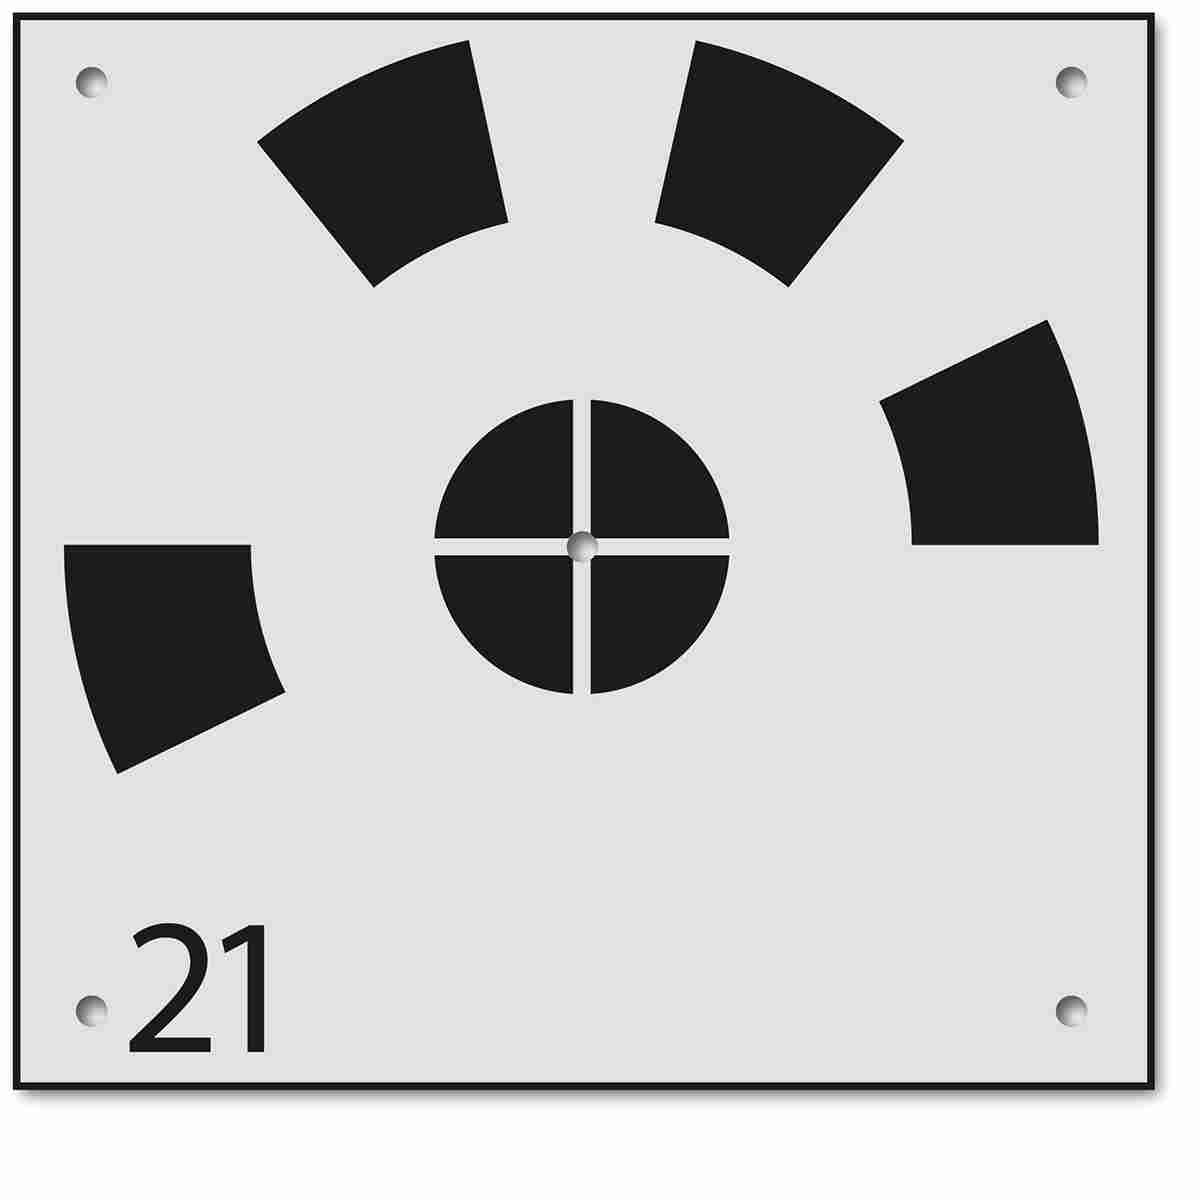 Drohnenbodenmarke RSL570-30 mit Nummerierung von Rothbucher Systeme